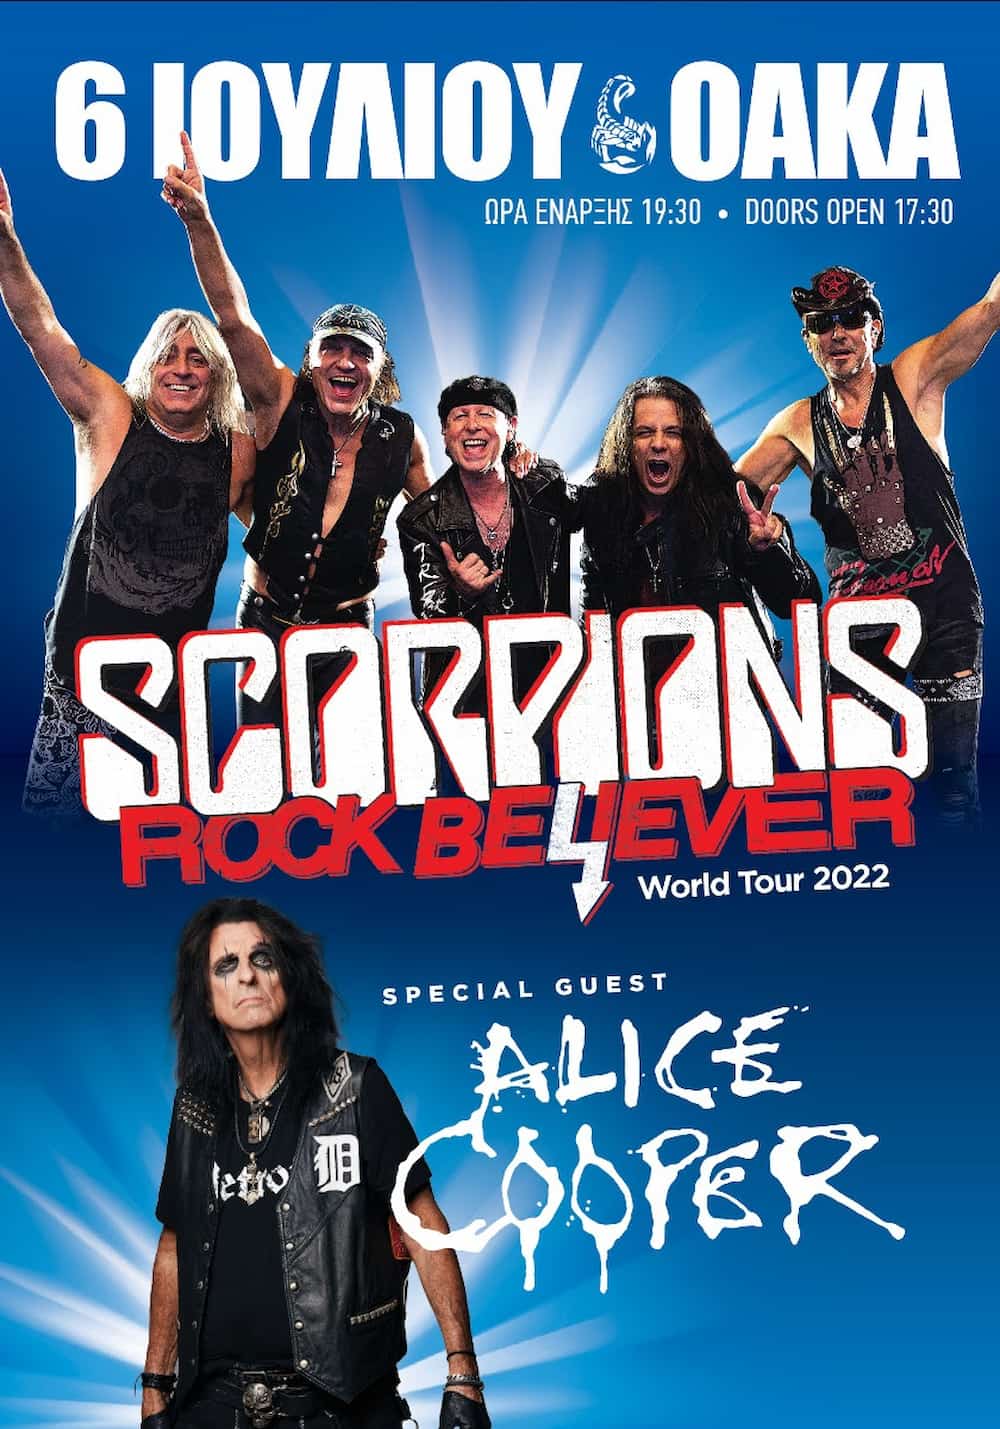 Scorpions Alice Cooper 30 6 22 - Scorpions - Alice Cooper: Δύο εκρηκτικές συναυλίες σε μια μοναδική βραδιά στο ΟΑΚΑ στις 6 Ιουλίου